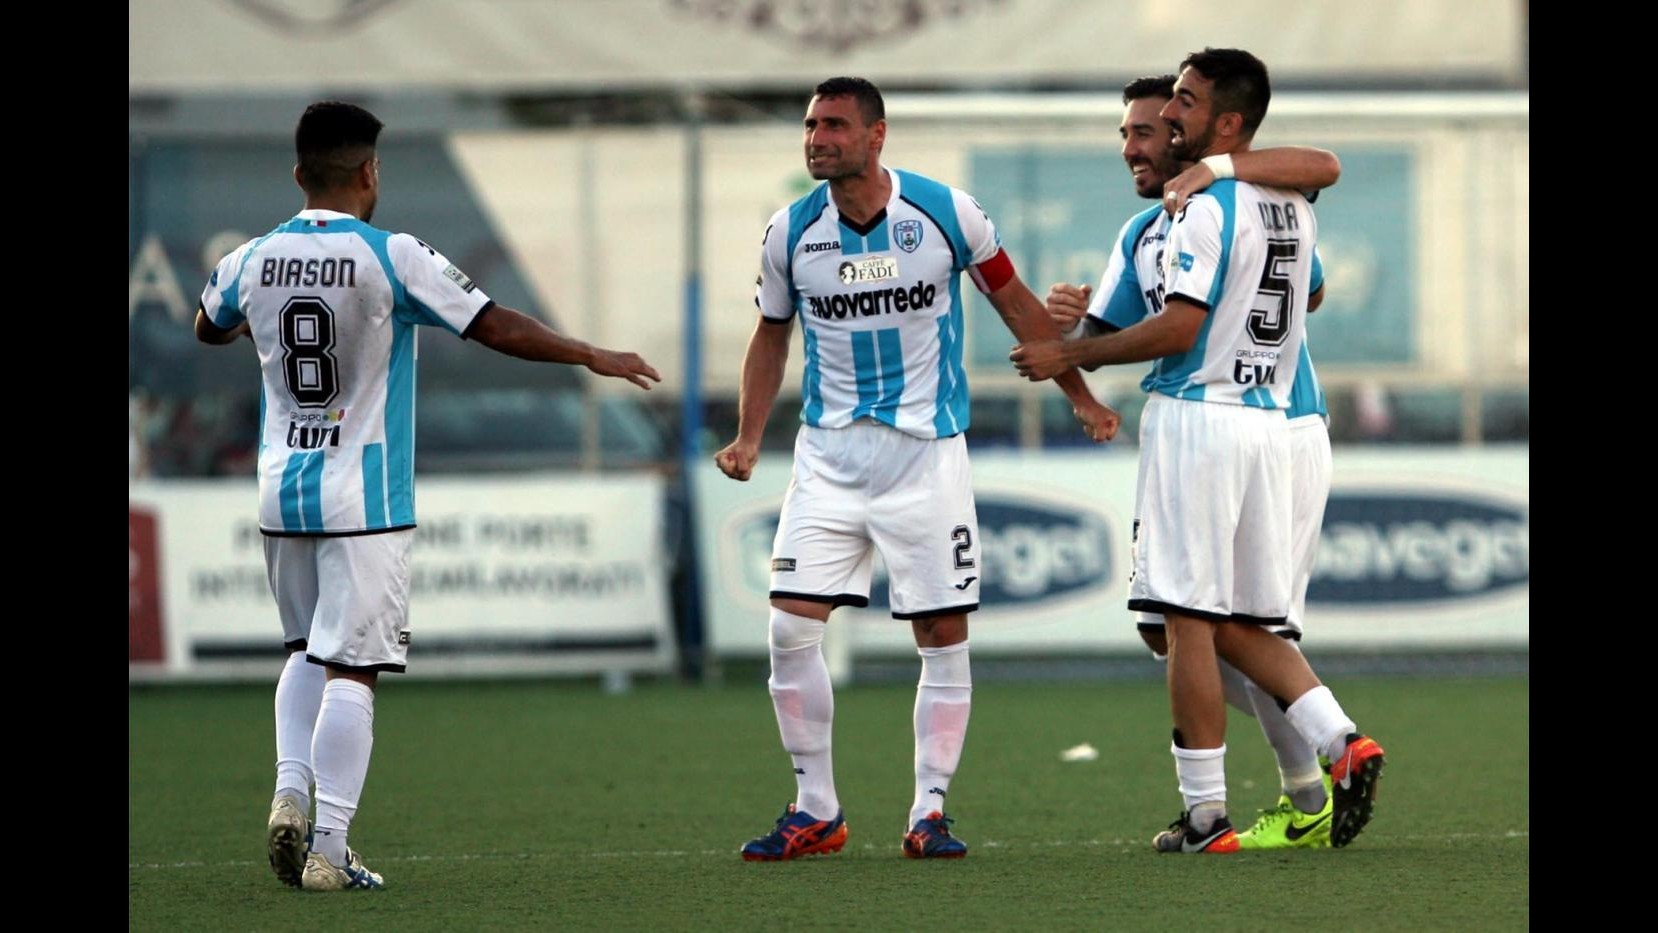 FOTO Lega Pro Playoff, Francavilla-Fondi 0-0